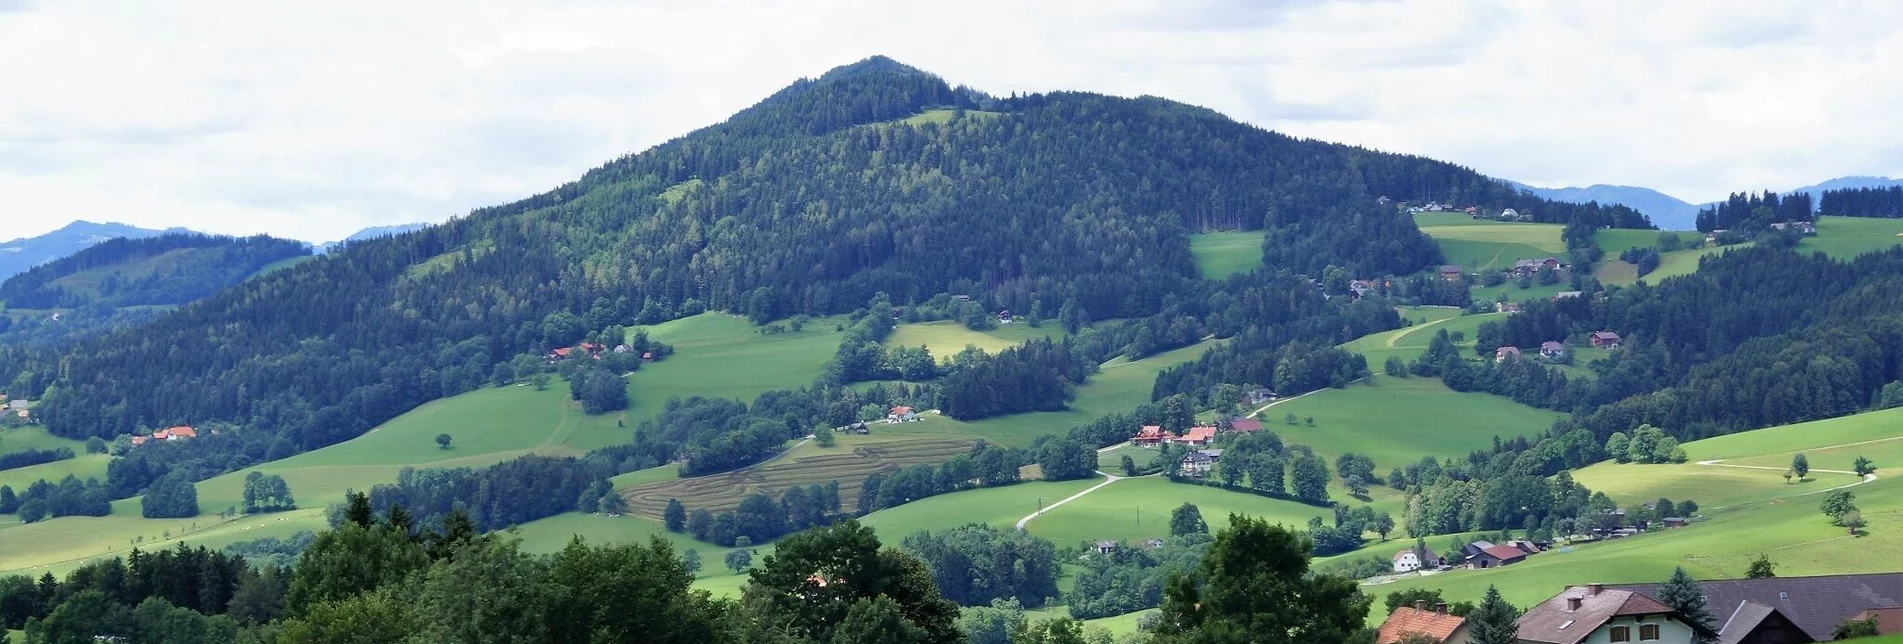 Hiking route R4 Kl. Panoramarundweg - Touren-Impression #1 | © Region Graz